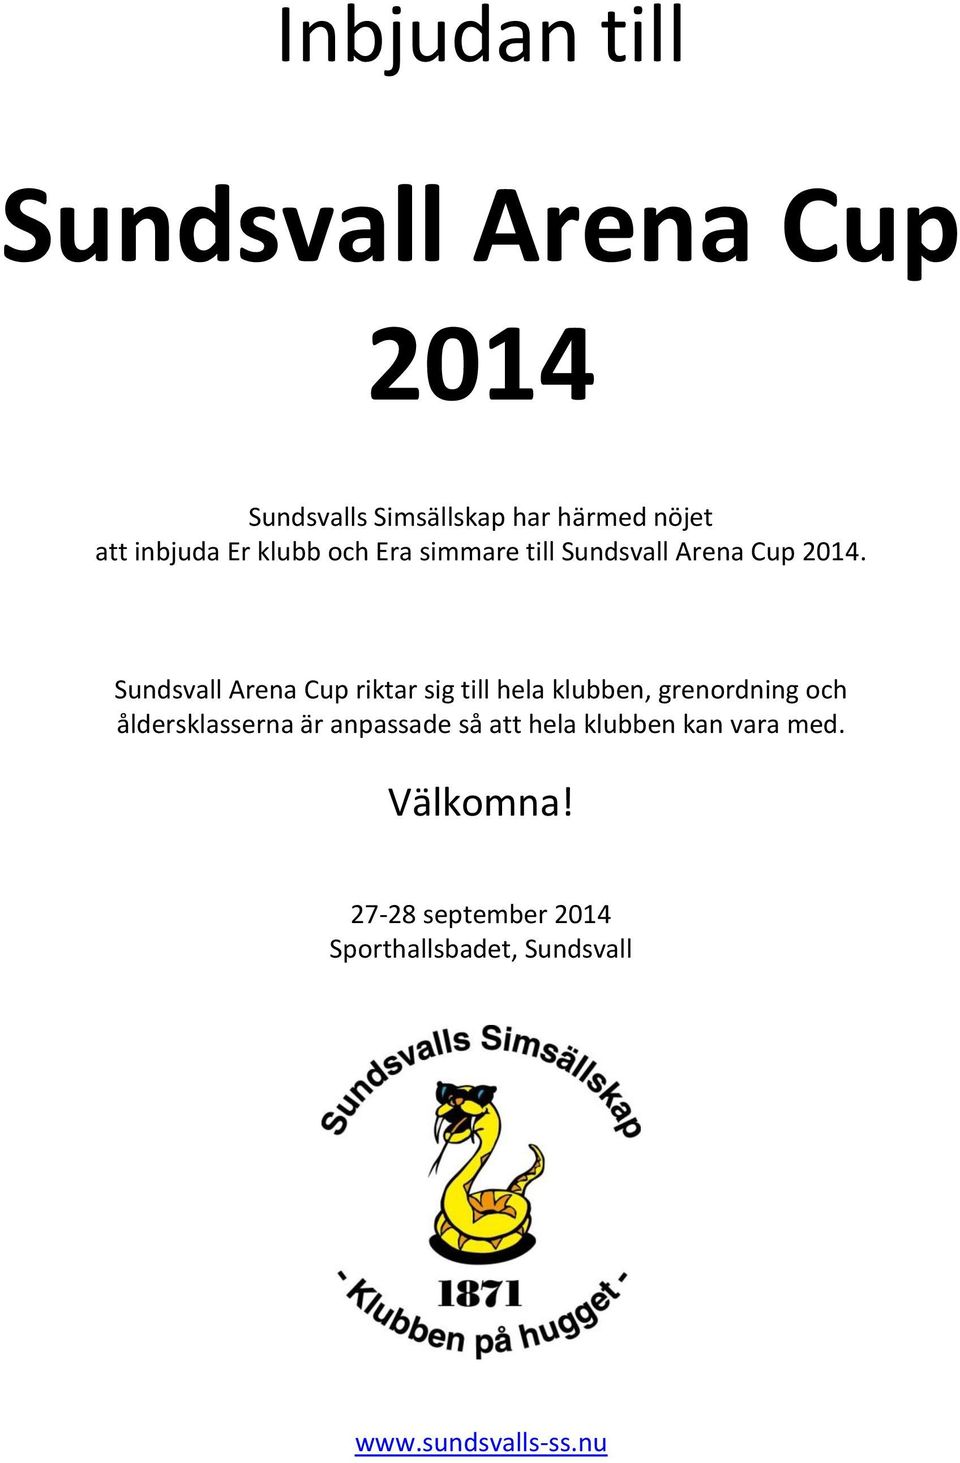 Sundsvall Arena Cup riktar sig till hela klubben, grenordning och åldersklasserna är